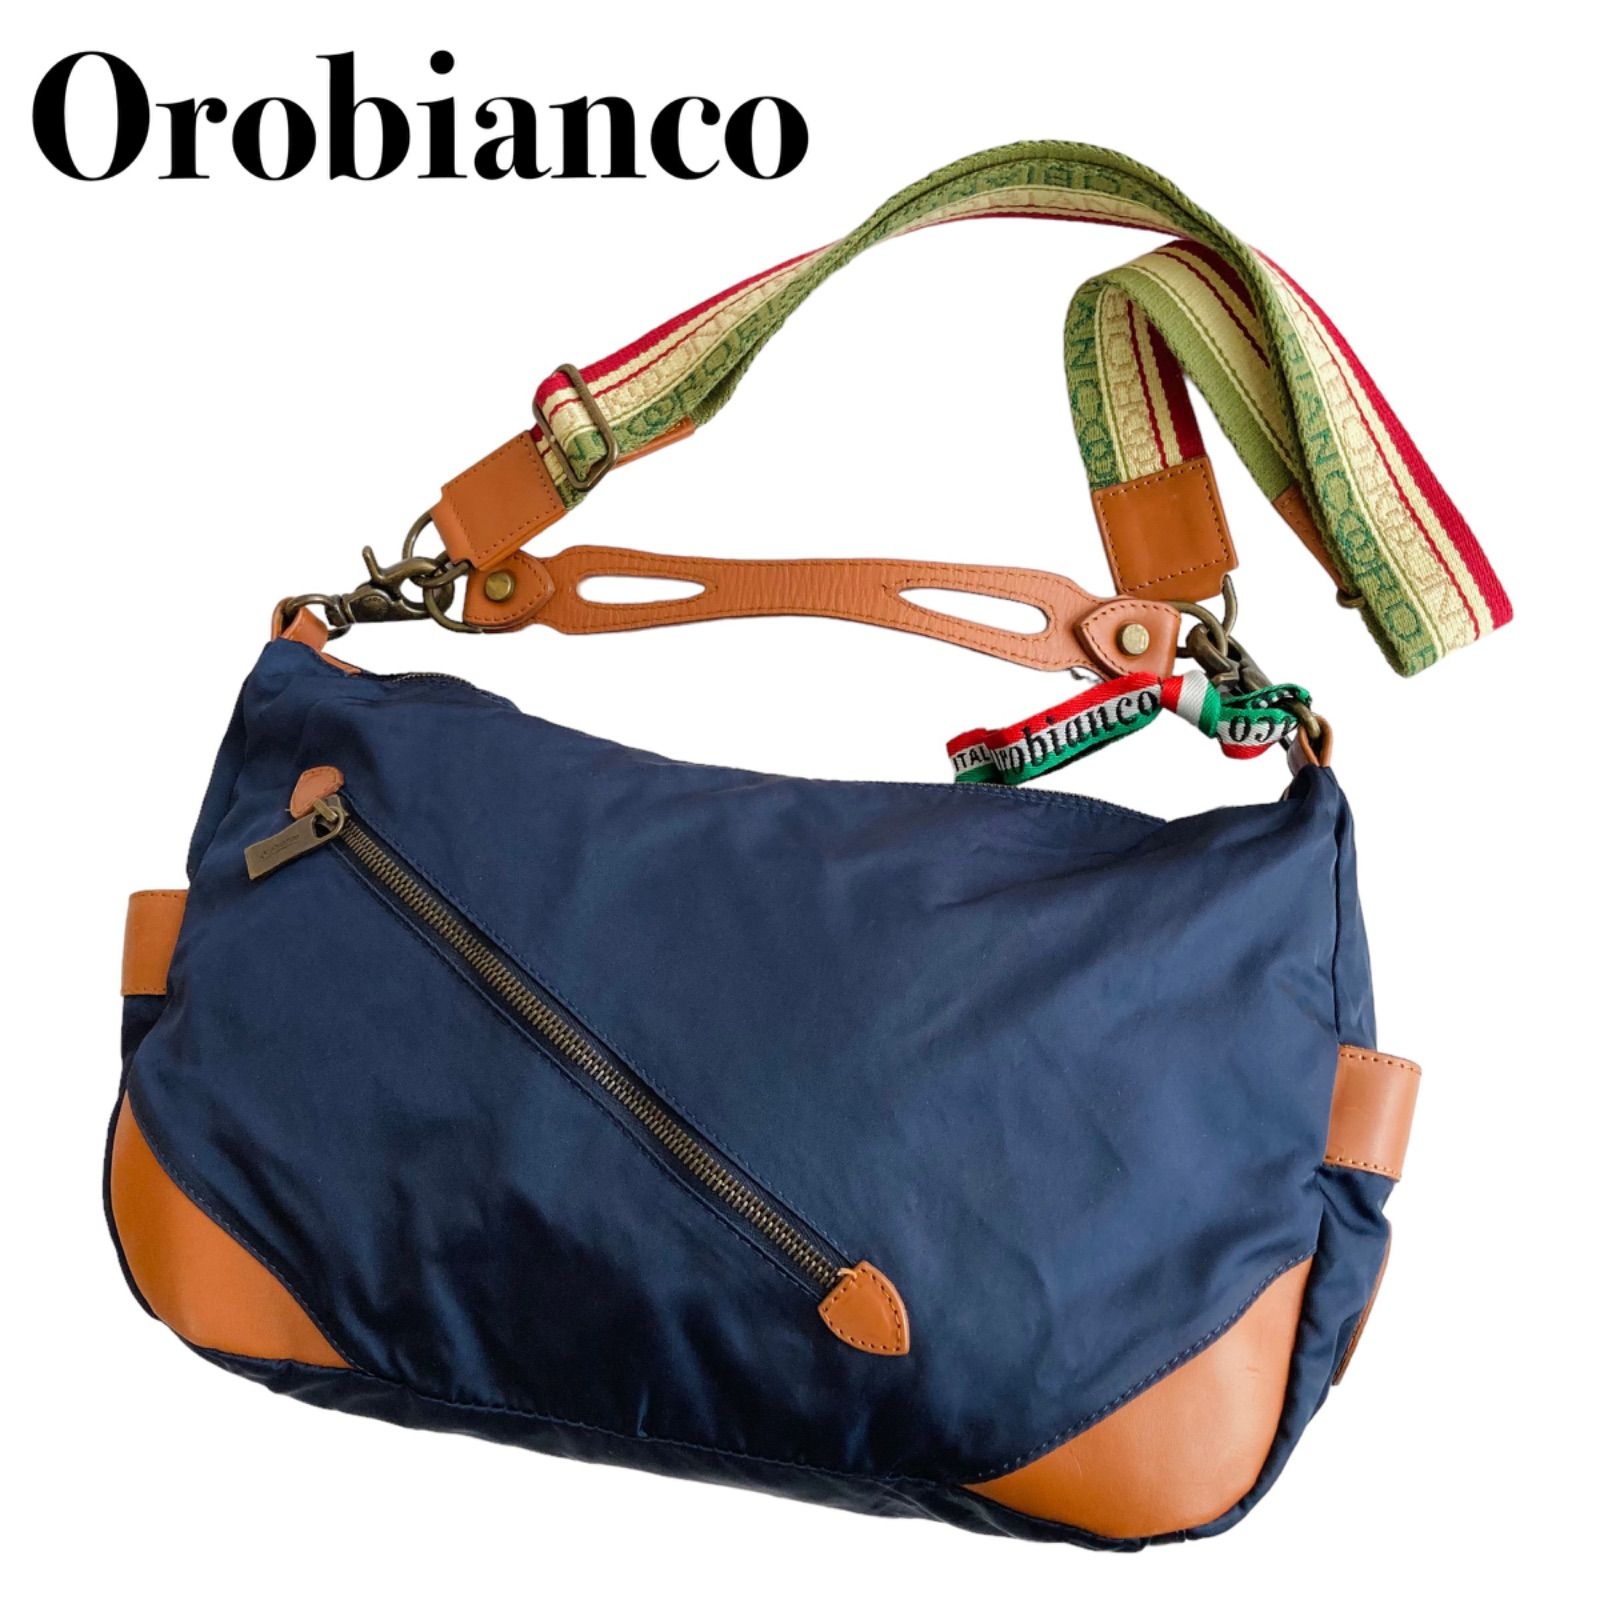 orobianco オロビアンコ 2way ハンドバッグ ショルダーバッグ - バッグ